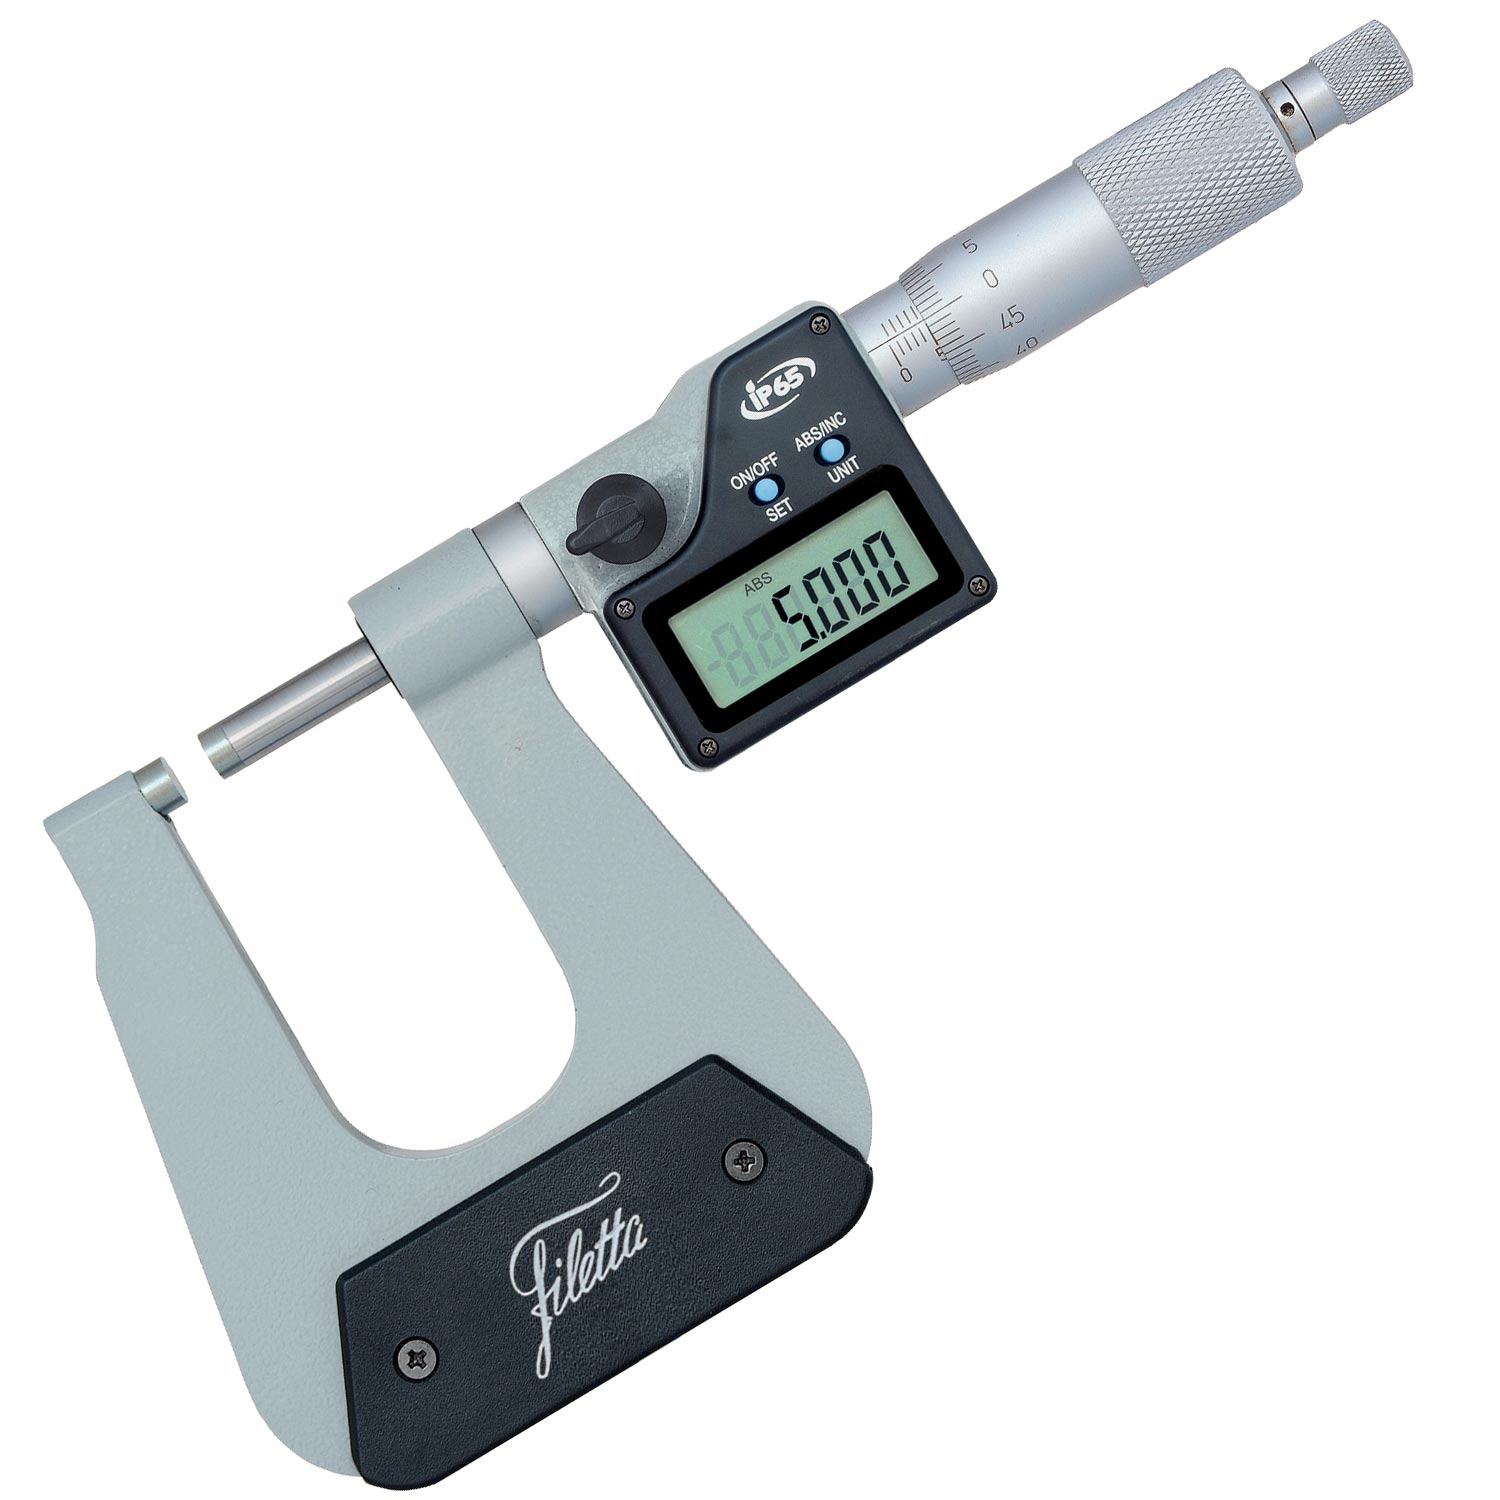 NEU Mikrometer Satz 0-100mm  in Holzkasette Micrometer Bügelmeßschraube Set Satz 